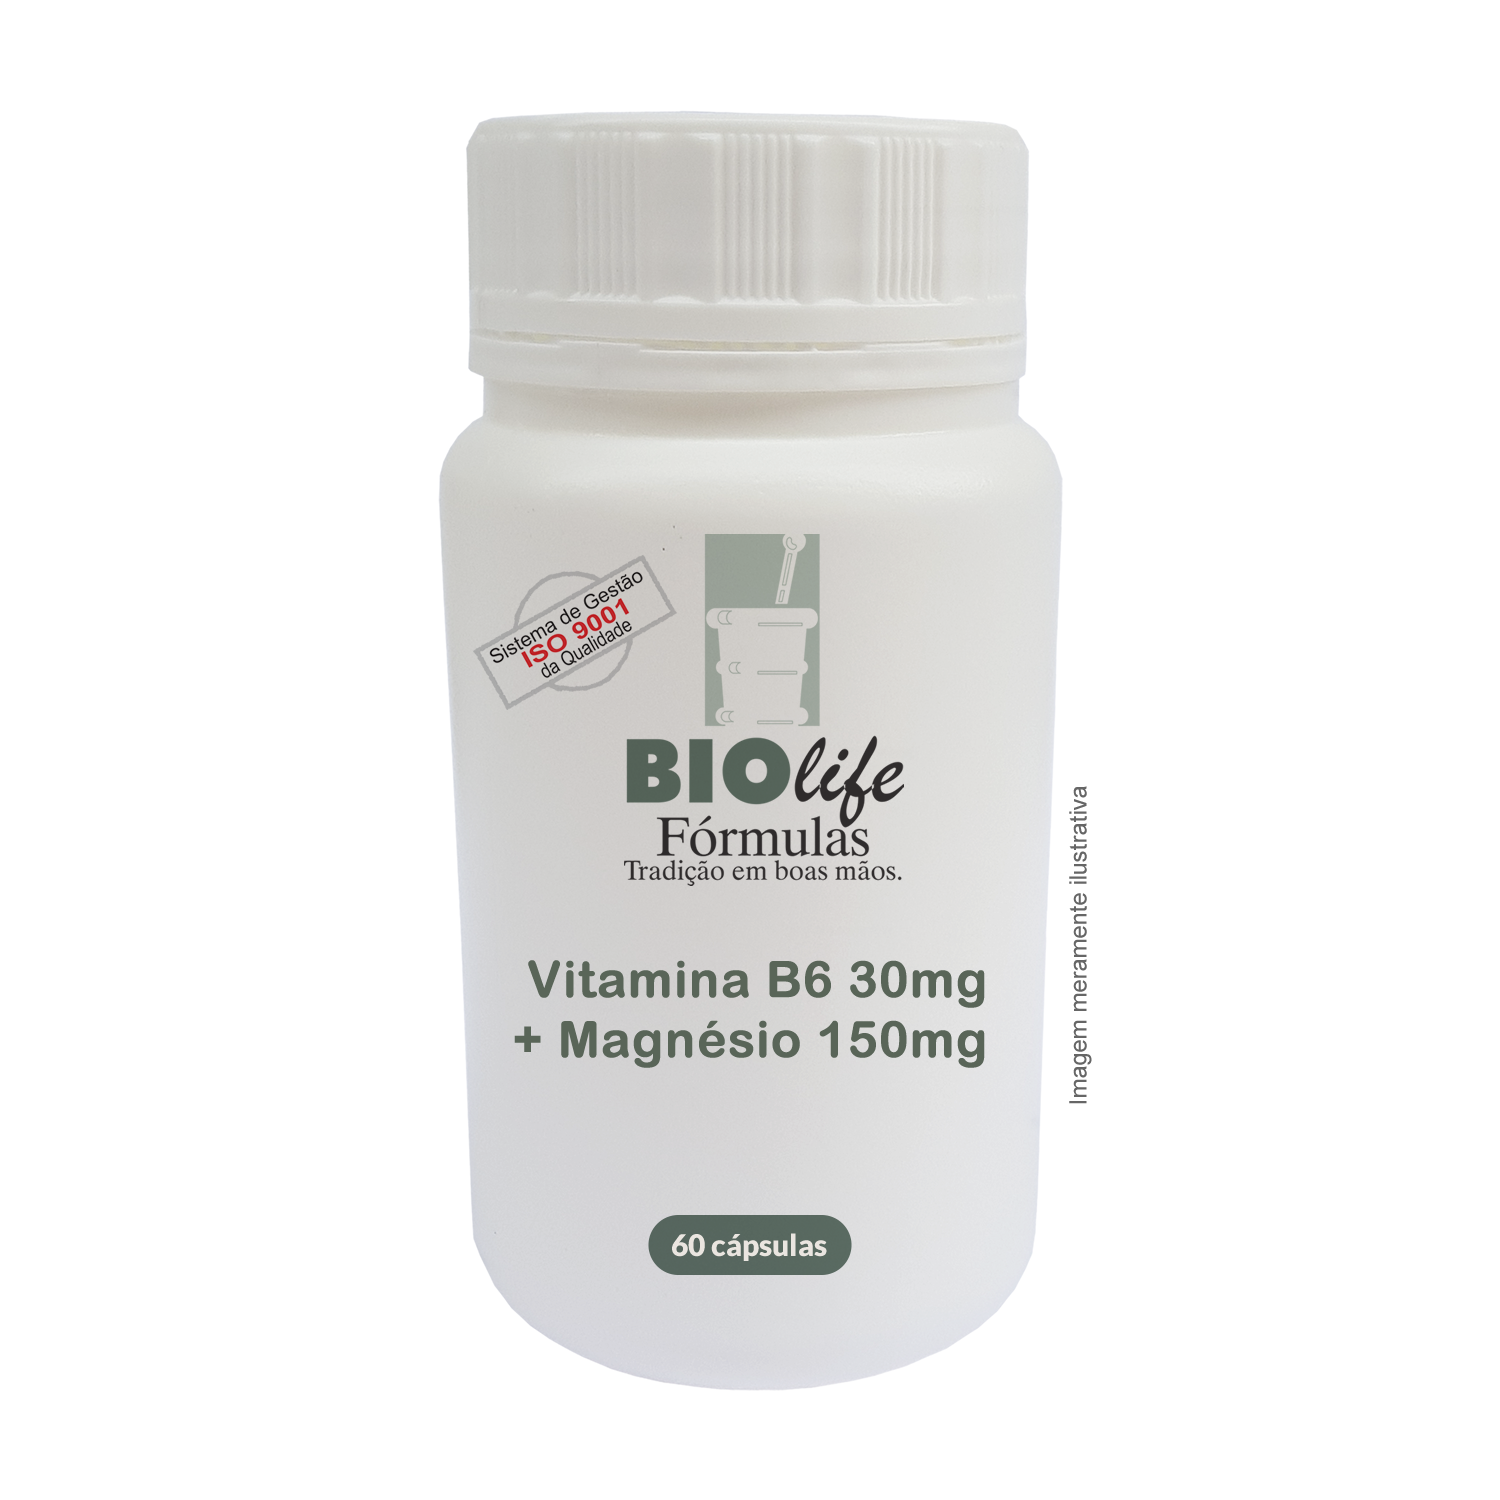 Vitamina B6 30mg + Magnésio 150mg - 60 caps - Recuperação Física e Ganho de Massa - BioLife